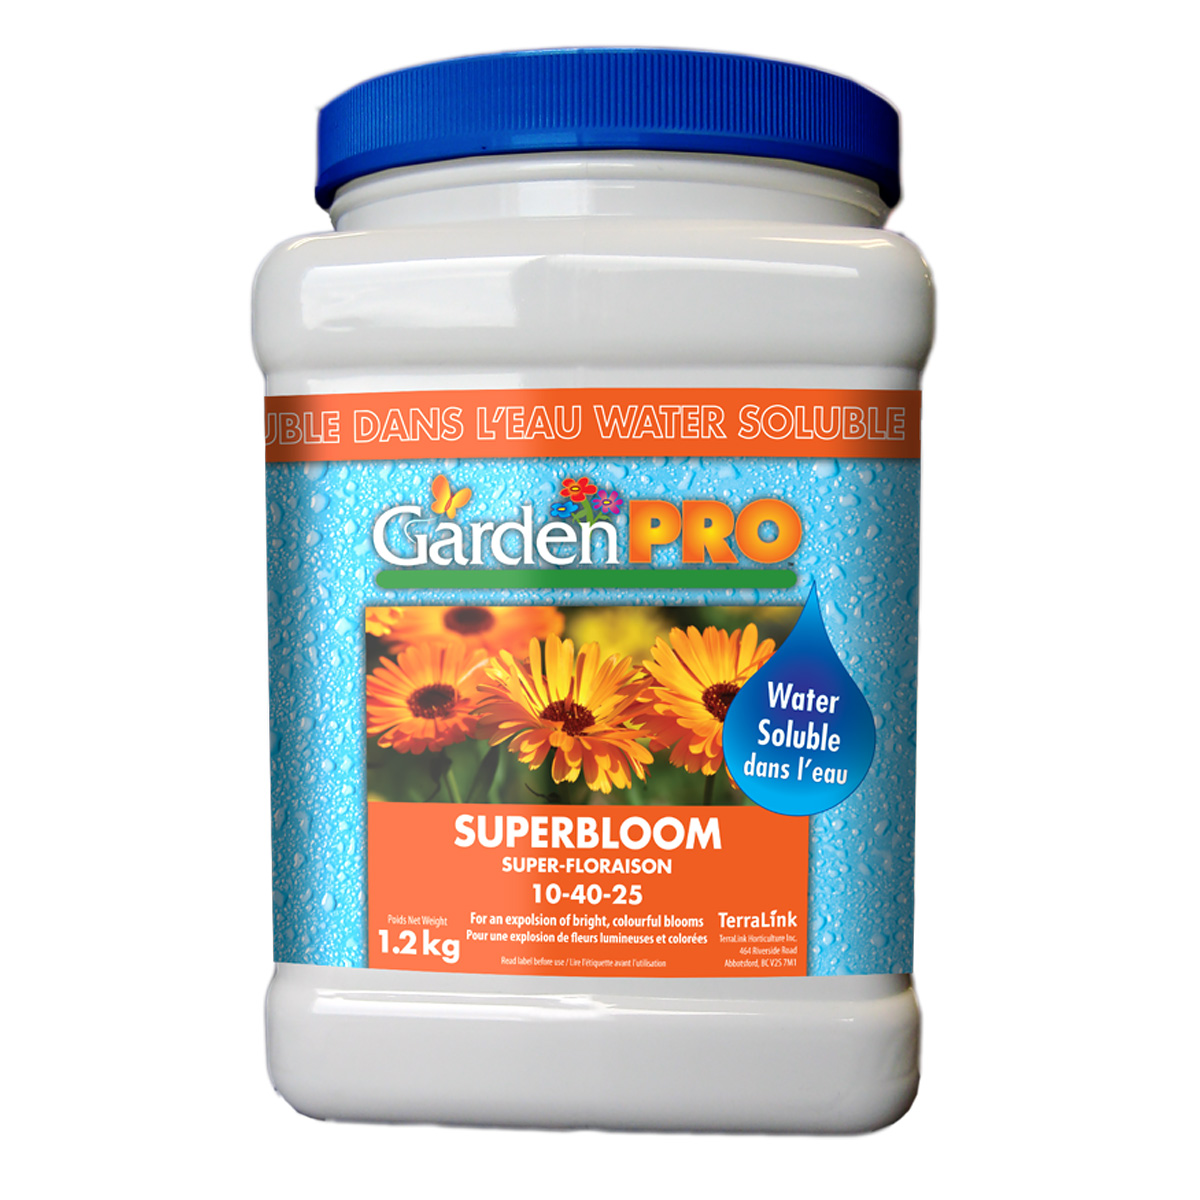 Garden Pro Water Soluble Superbloom Fertilizer 10-40-25 1.2kg